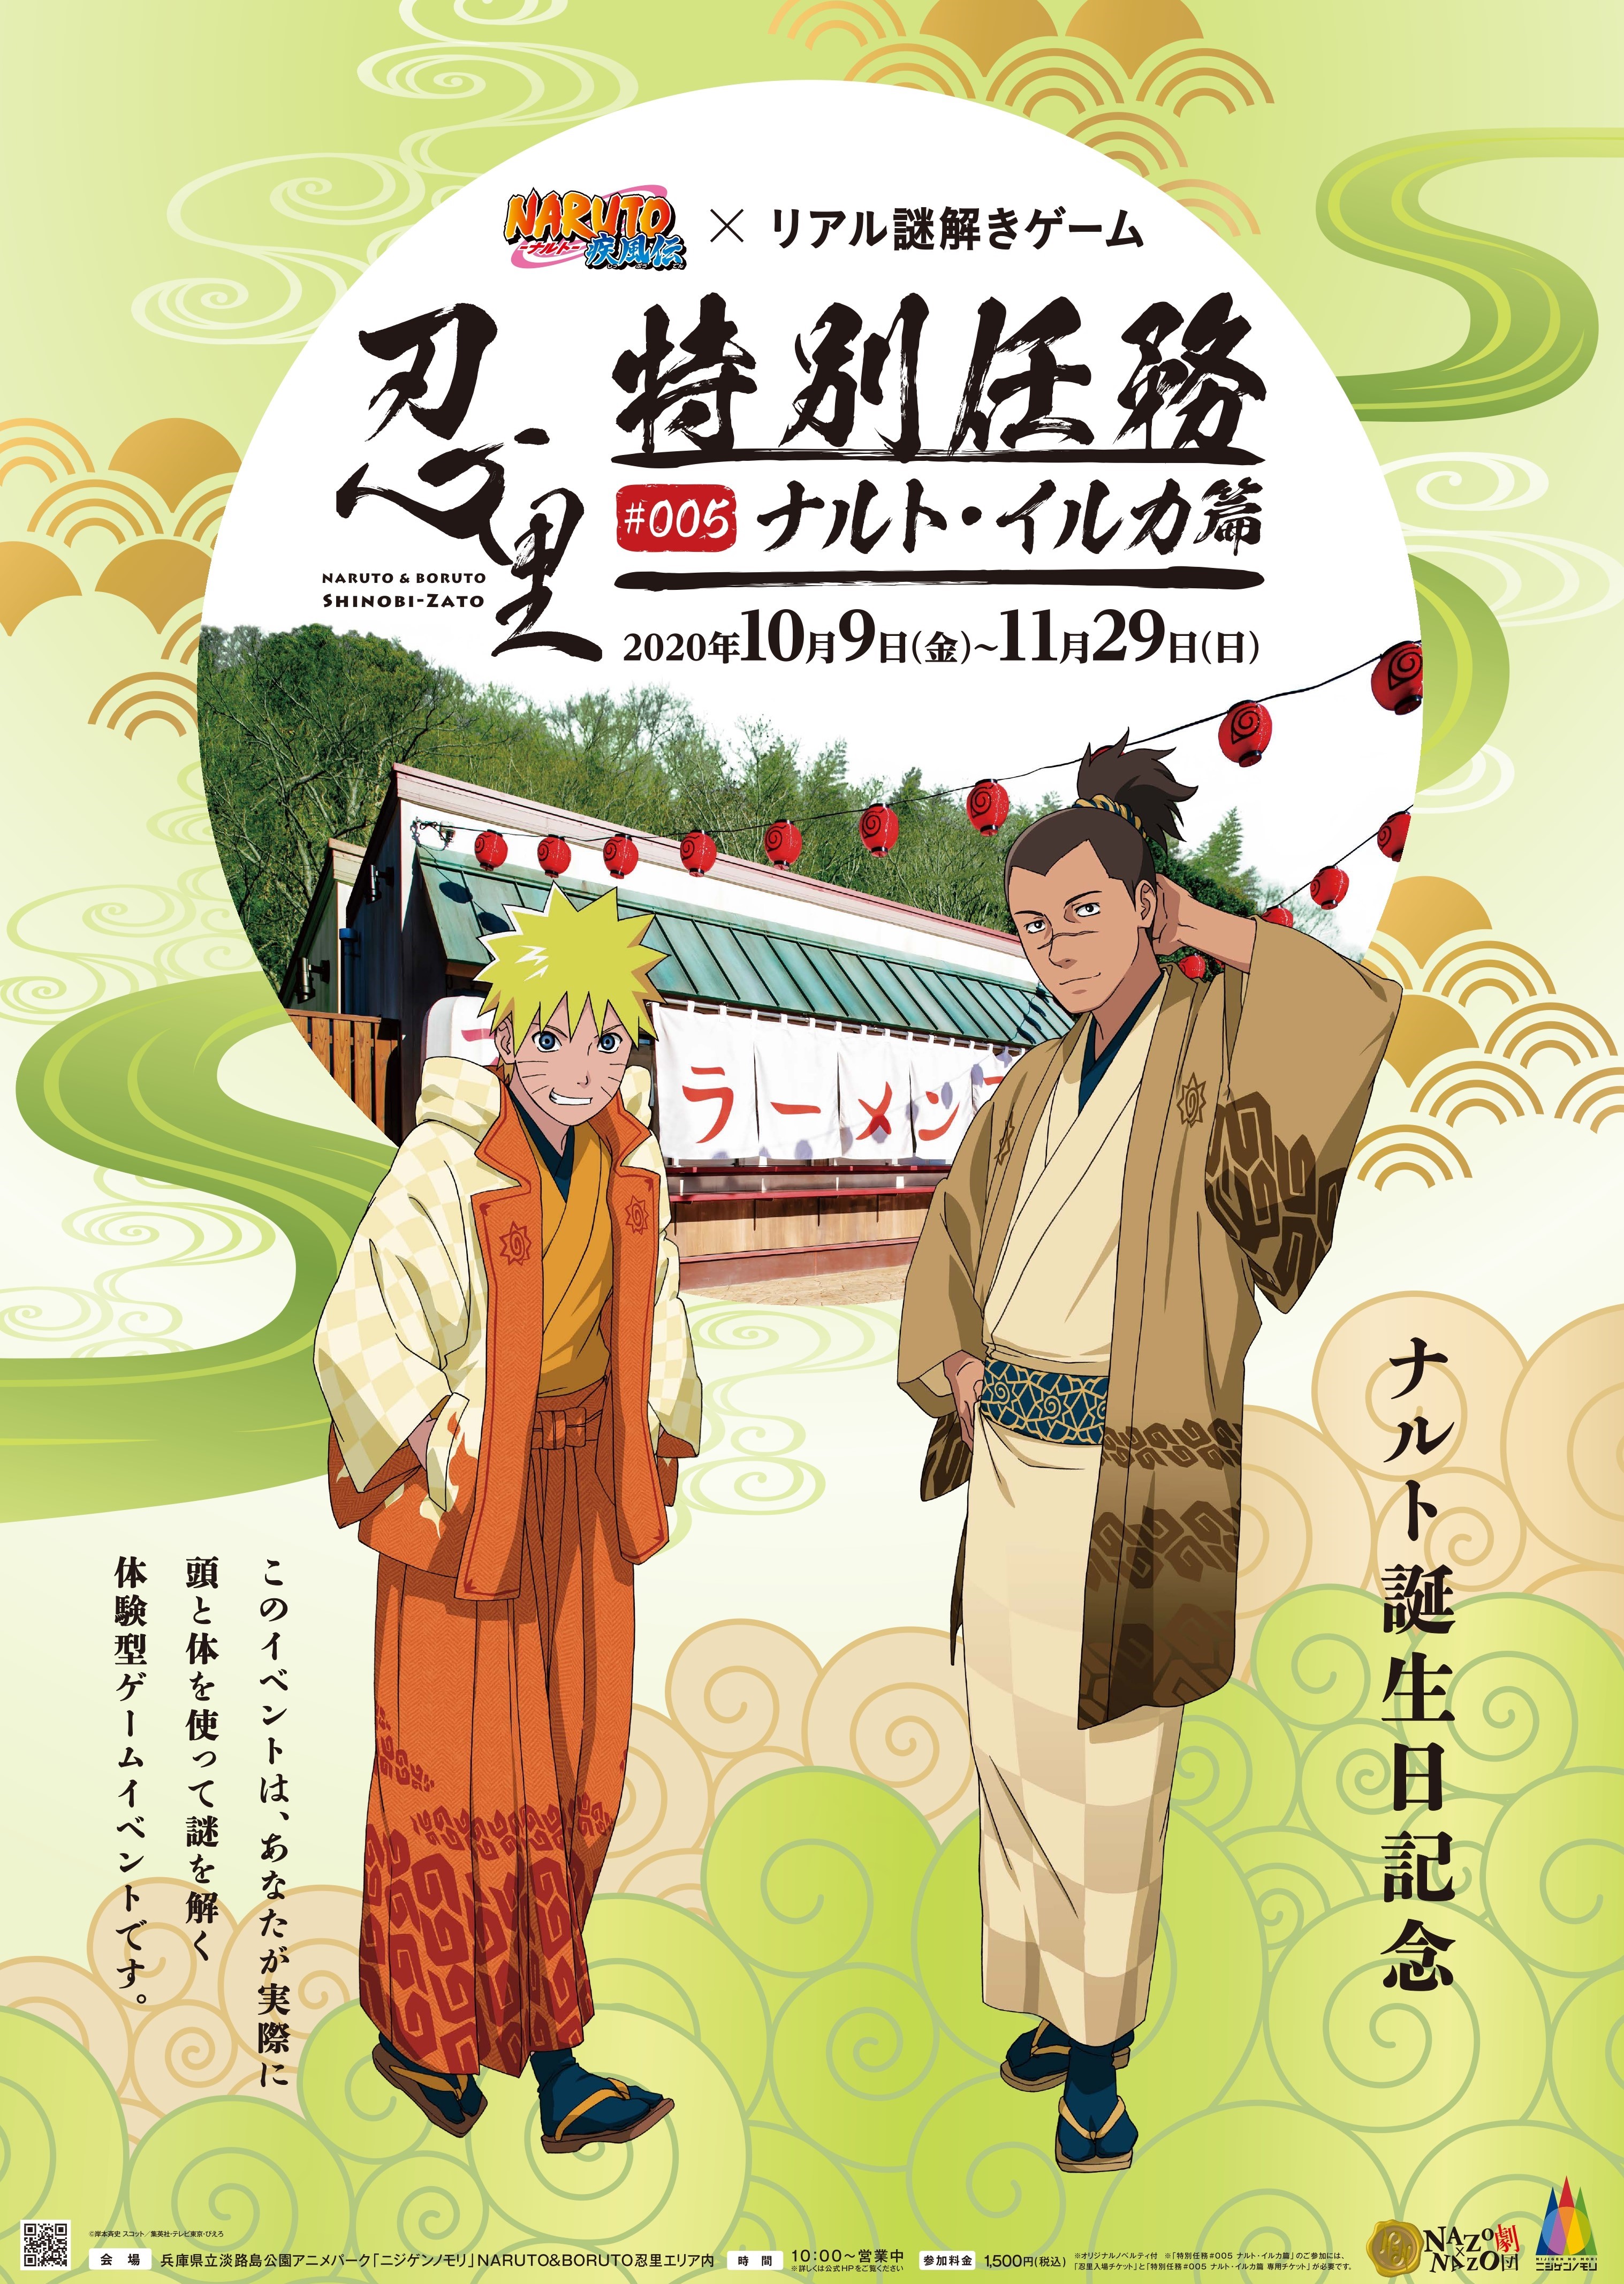 うずまきナルト生誕祭 10月9日から開催 Naruto Boruto 忍里 で謎解きにチャレンジ Newscast